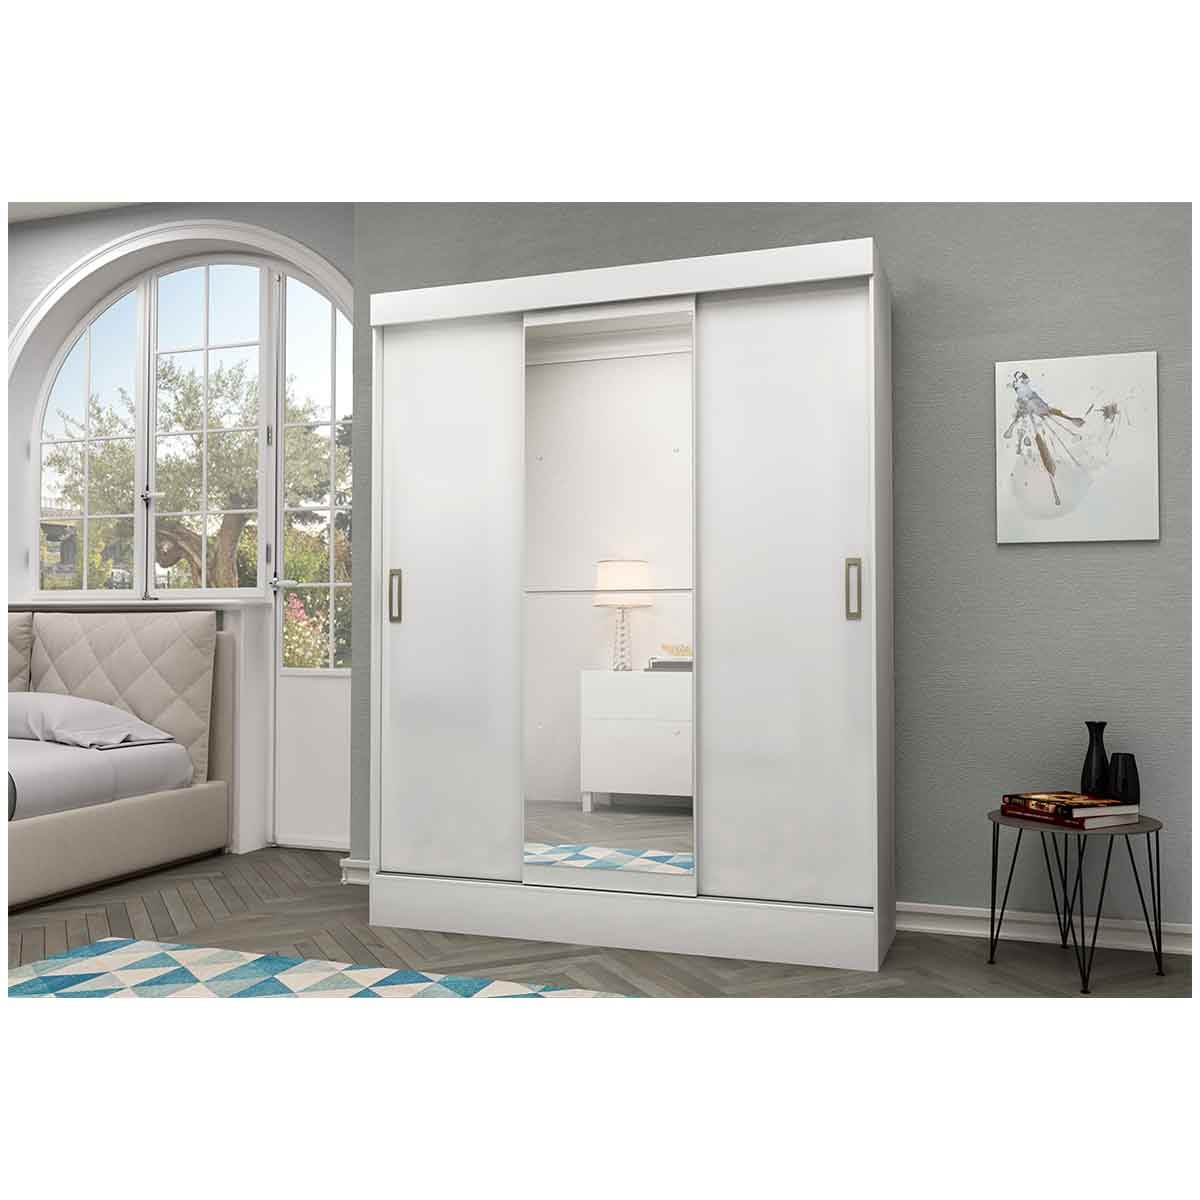 Ropero Closet Moderno con Espejo 3 Puertas  2 Cajones Internos Rieles Metalicos Color Blanco 3537-1 